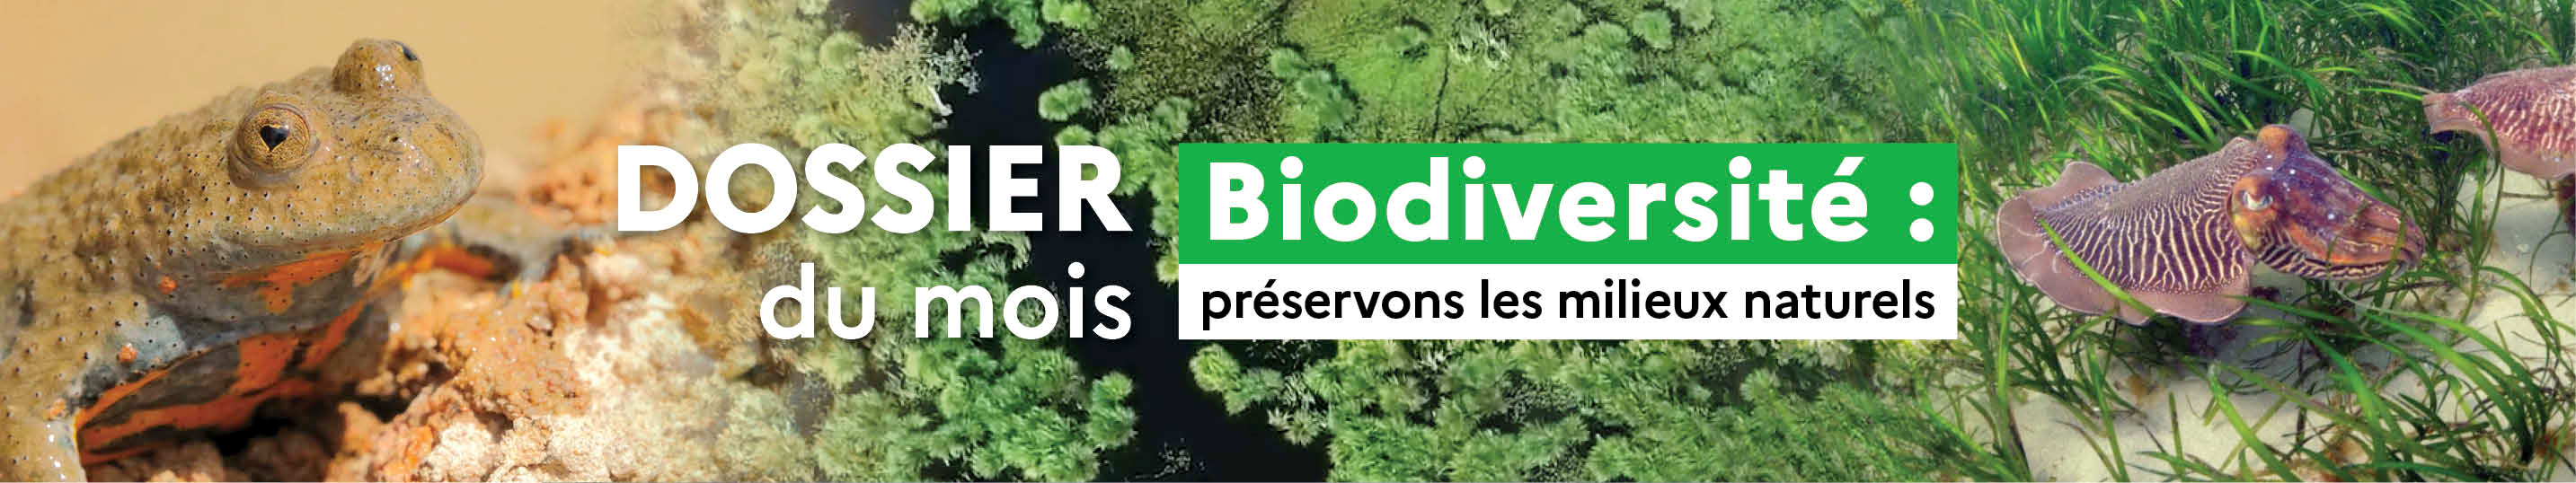 Biodiversité : Préservons les milieux naturels - Dossier du mois